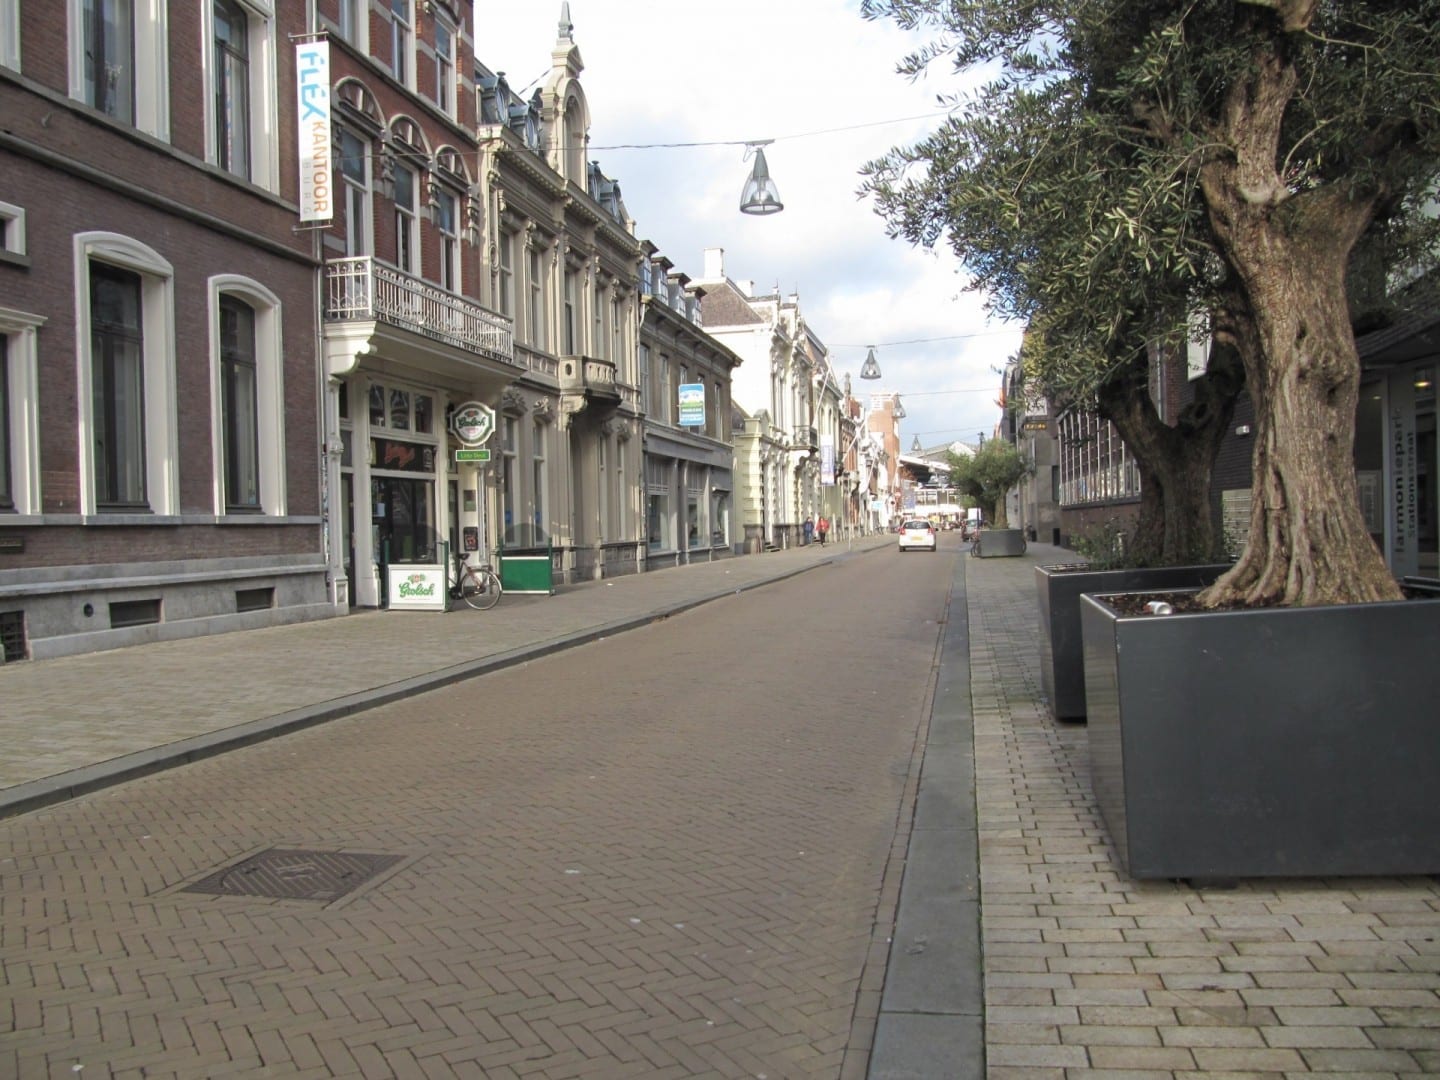 Stationstraat, una de las típicas calles históricas holandesas en Tilburg Tilburg Países Bajos